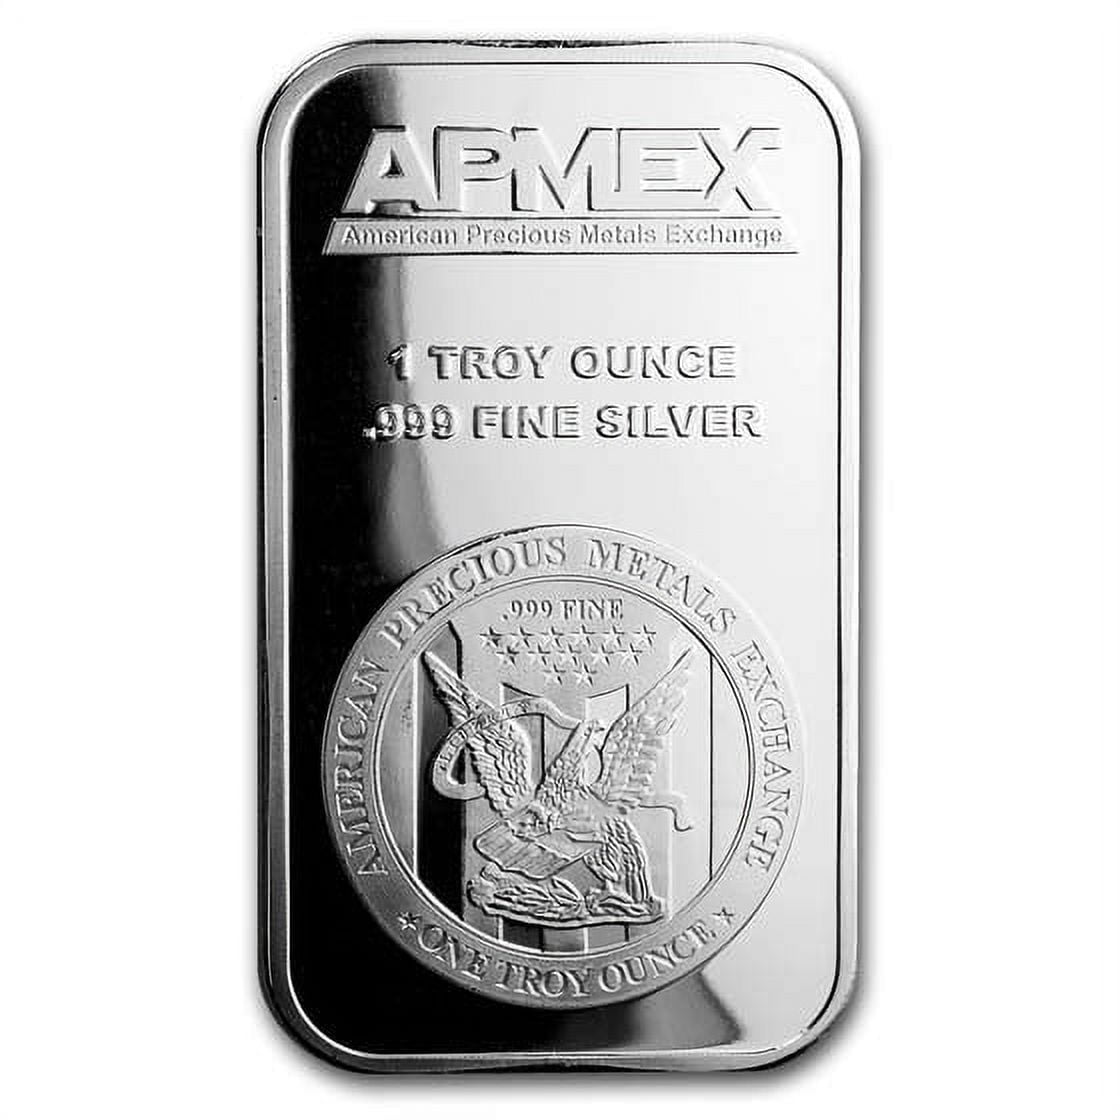 1 oz Silver Bar - APMEX